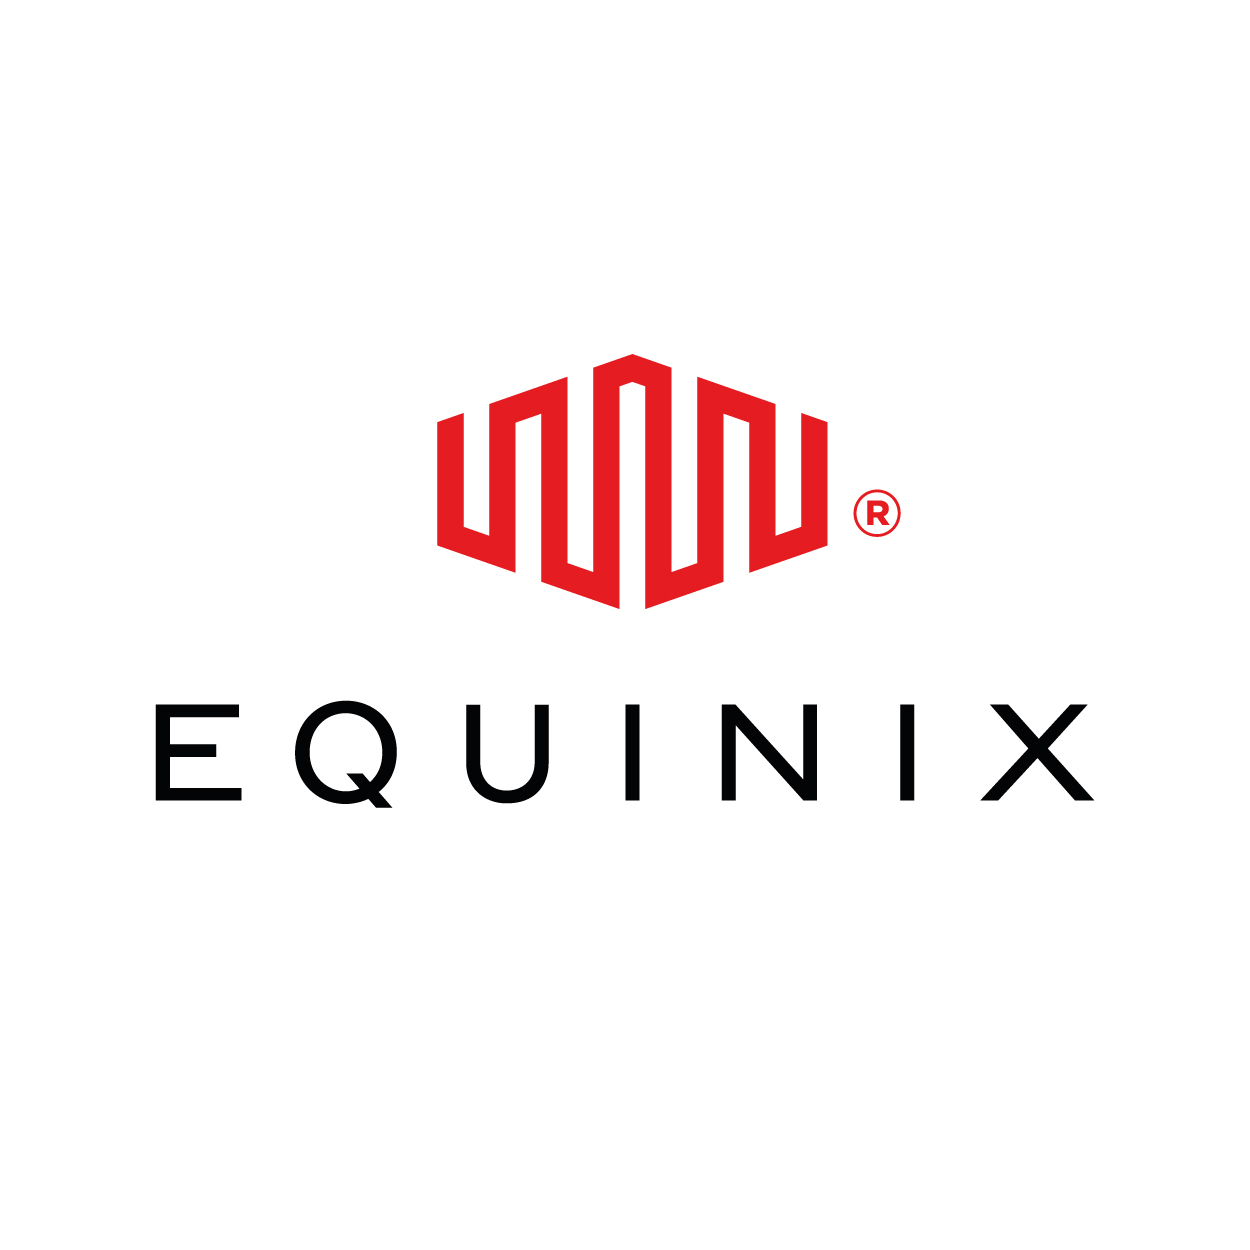 Equinix – Americas logo